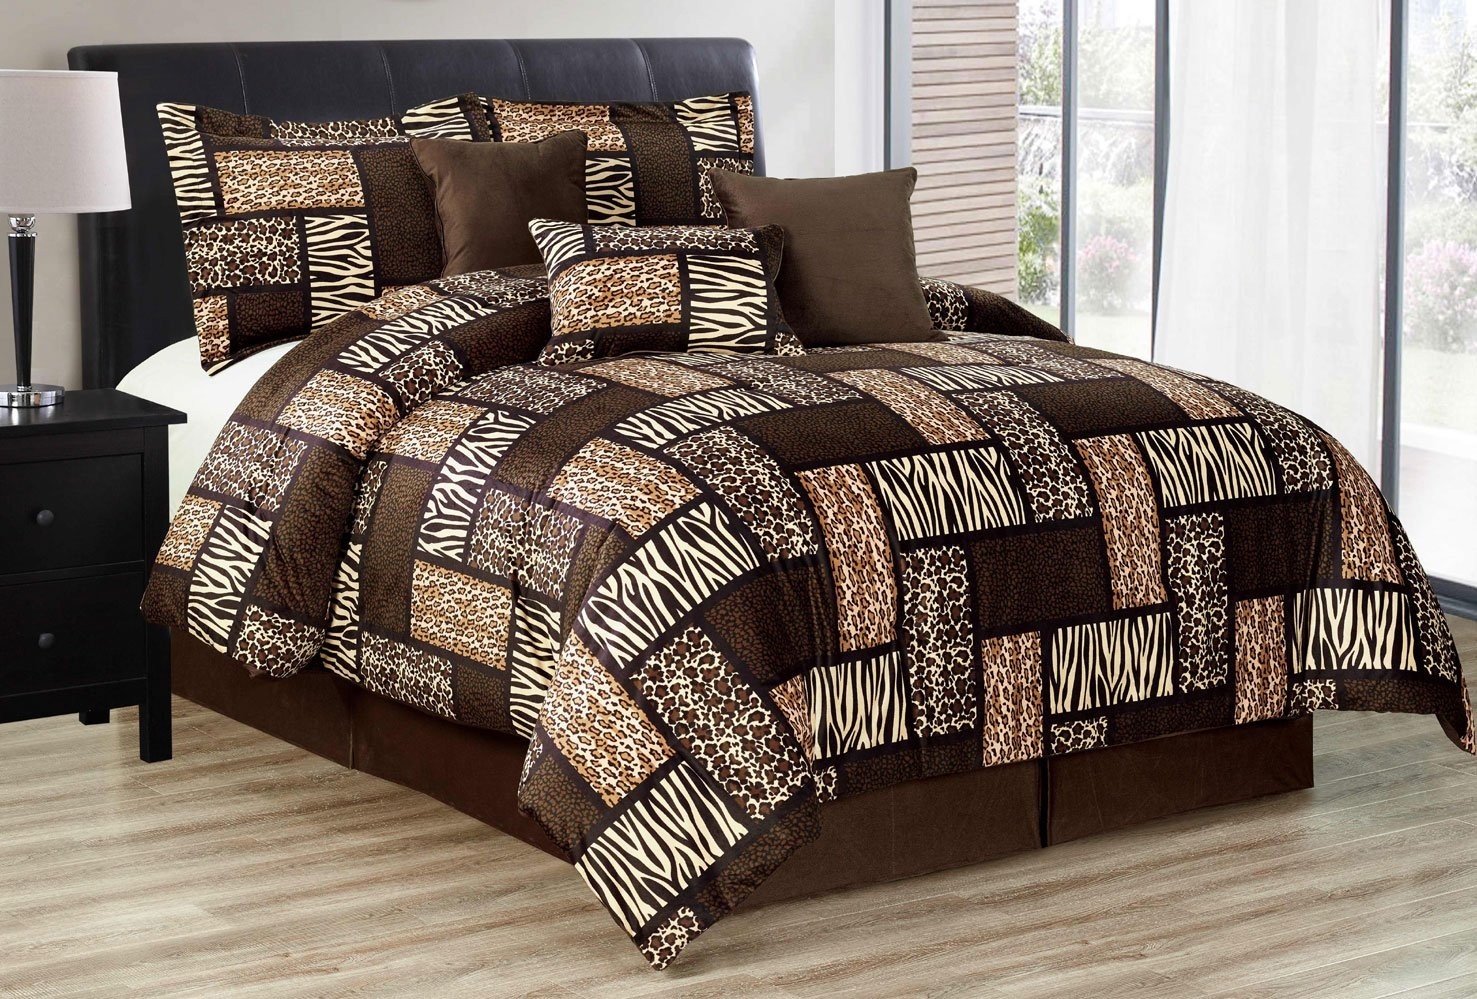 Animal print bedding safari bedding comforters ease 3